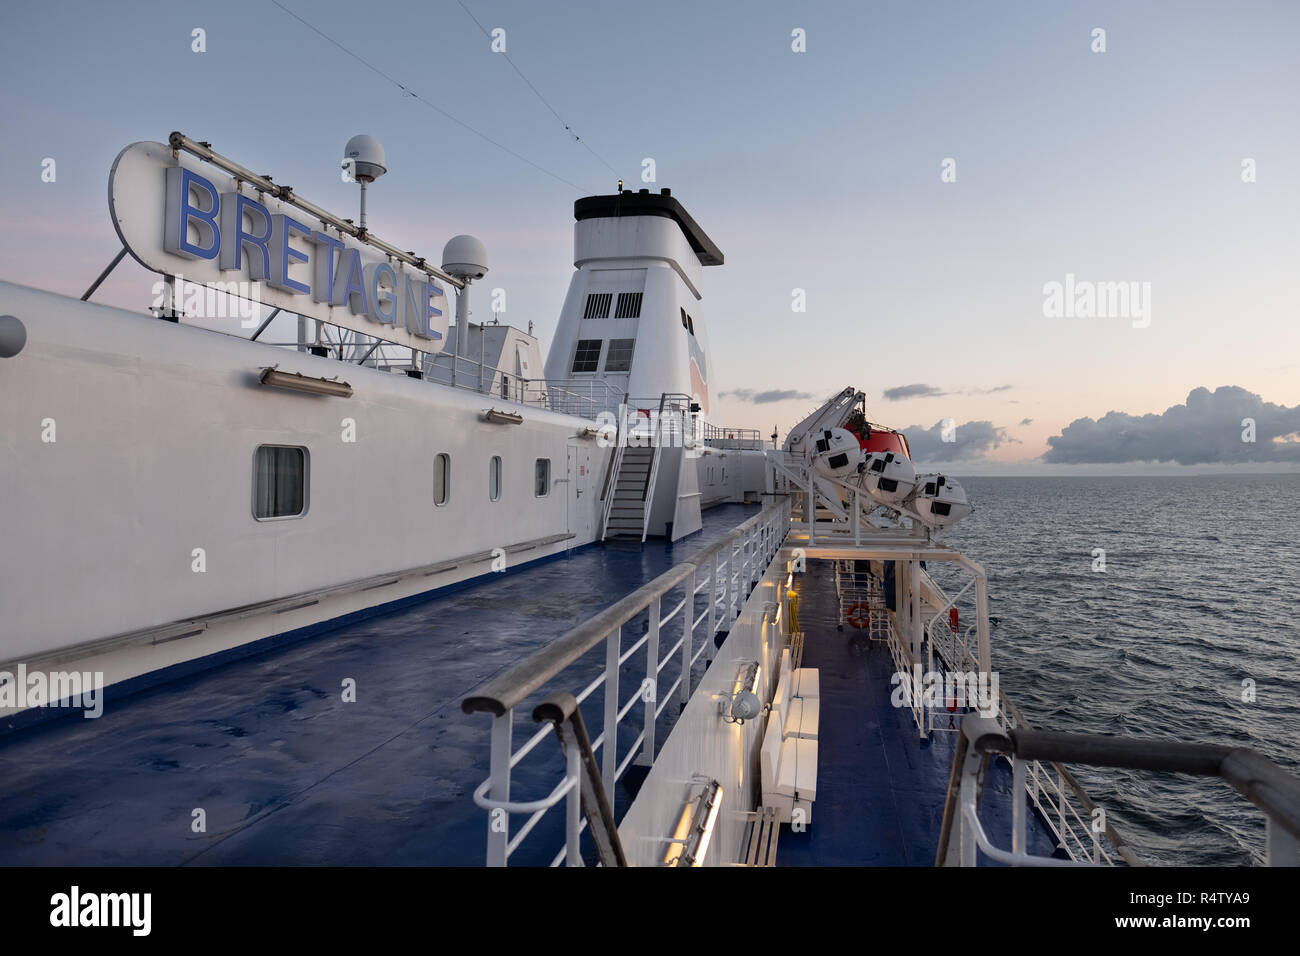 Vue extérieure tôt le matin à bord du navire MV Bretagne Brittany Ferries, traversée de Portsmouth à St Malo Banque D'Images